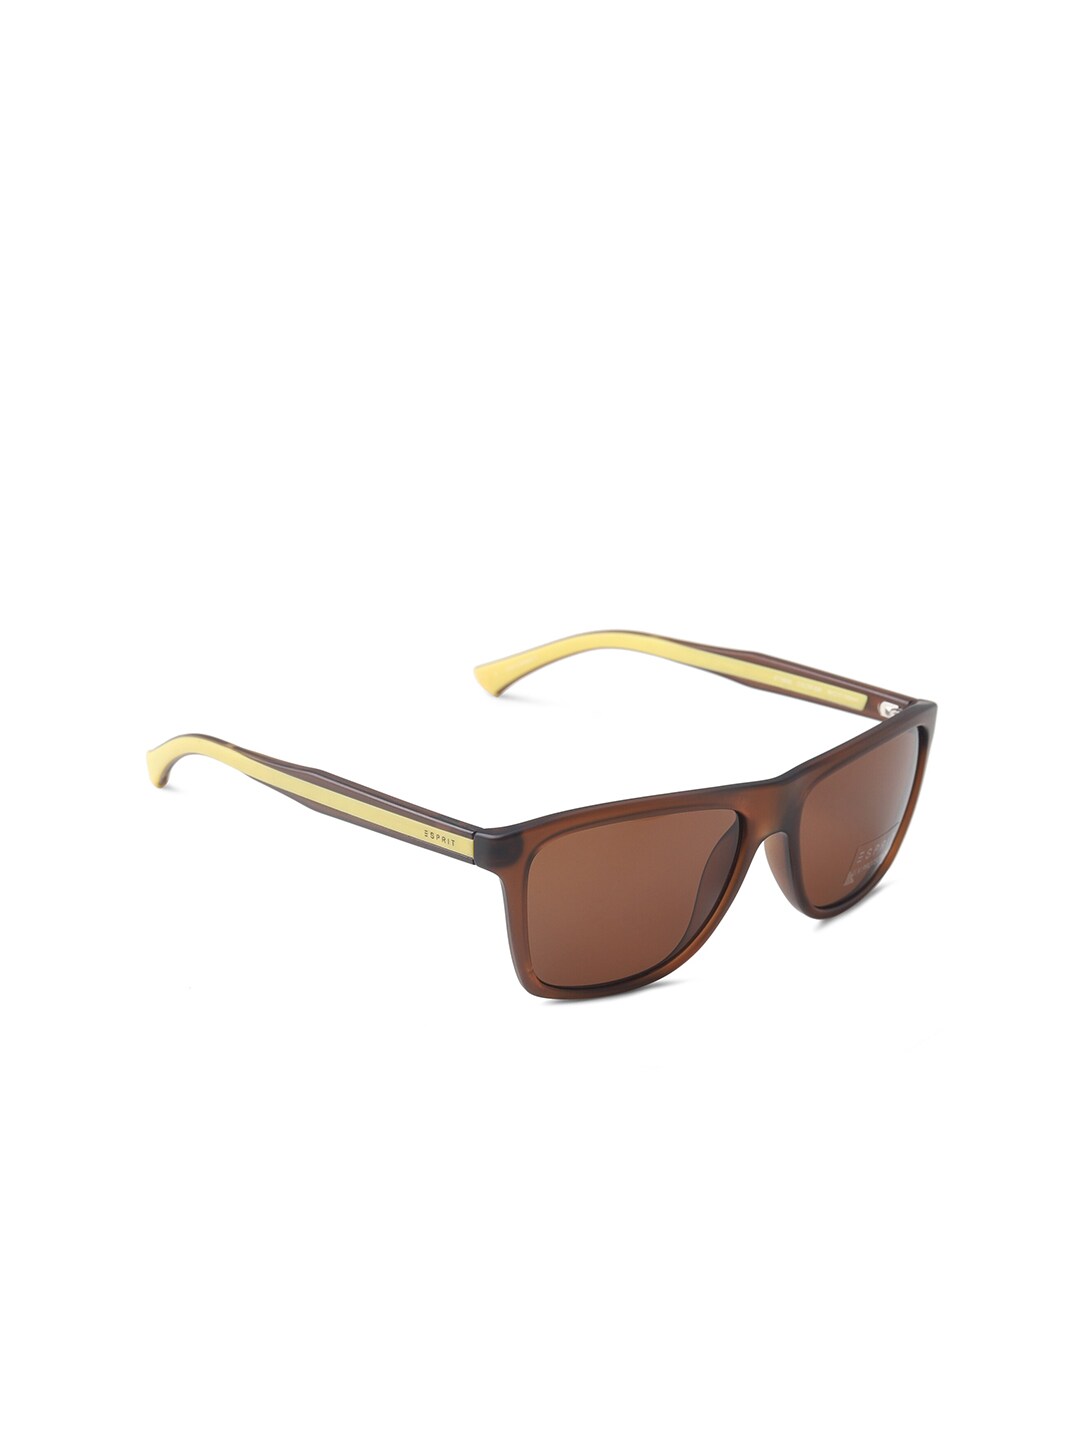 ESPRIT Unisex Brown Aviator Sunglasses with UV Protected Lens ET19626 Price in India